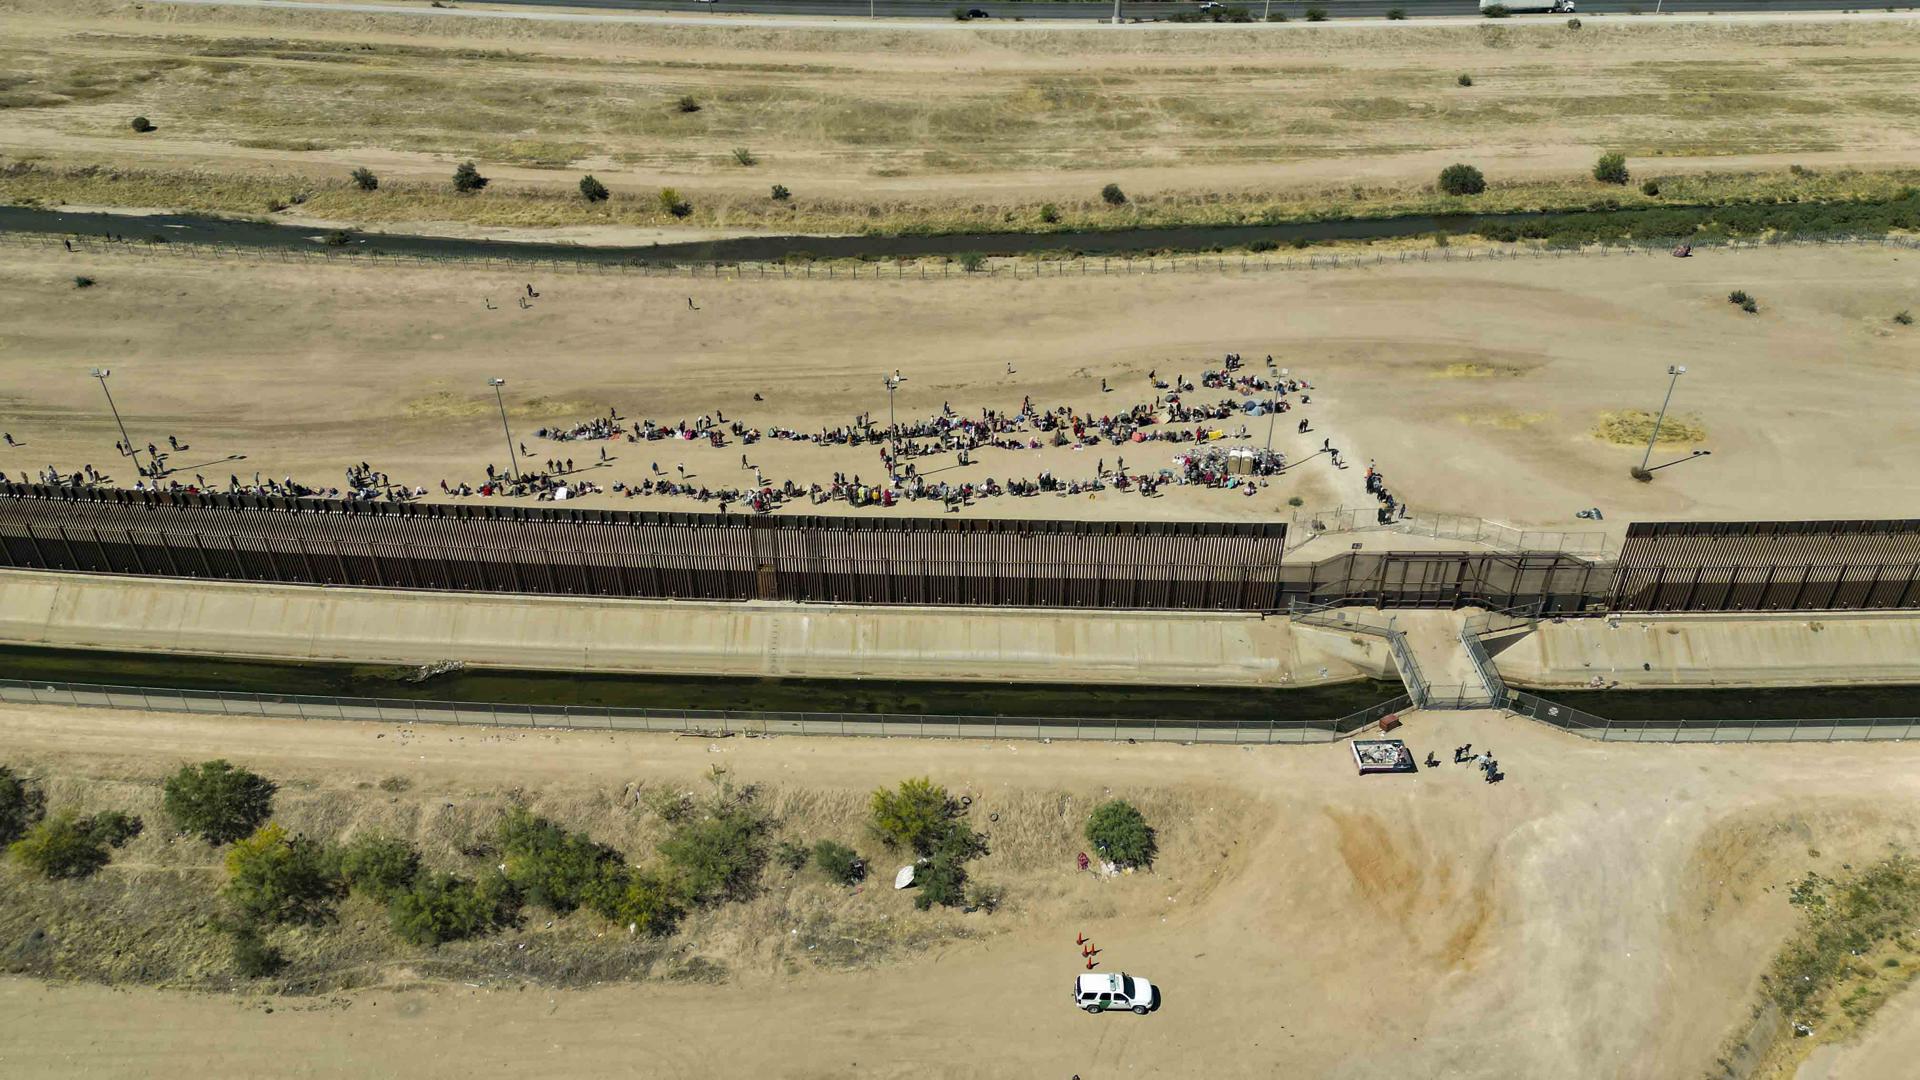 Victoria temporal para el proyecto republicano de reanudar el muro entre EE.UU. y México